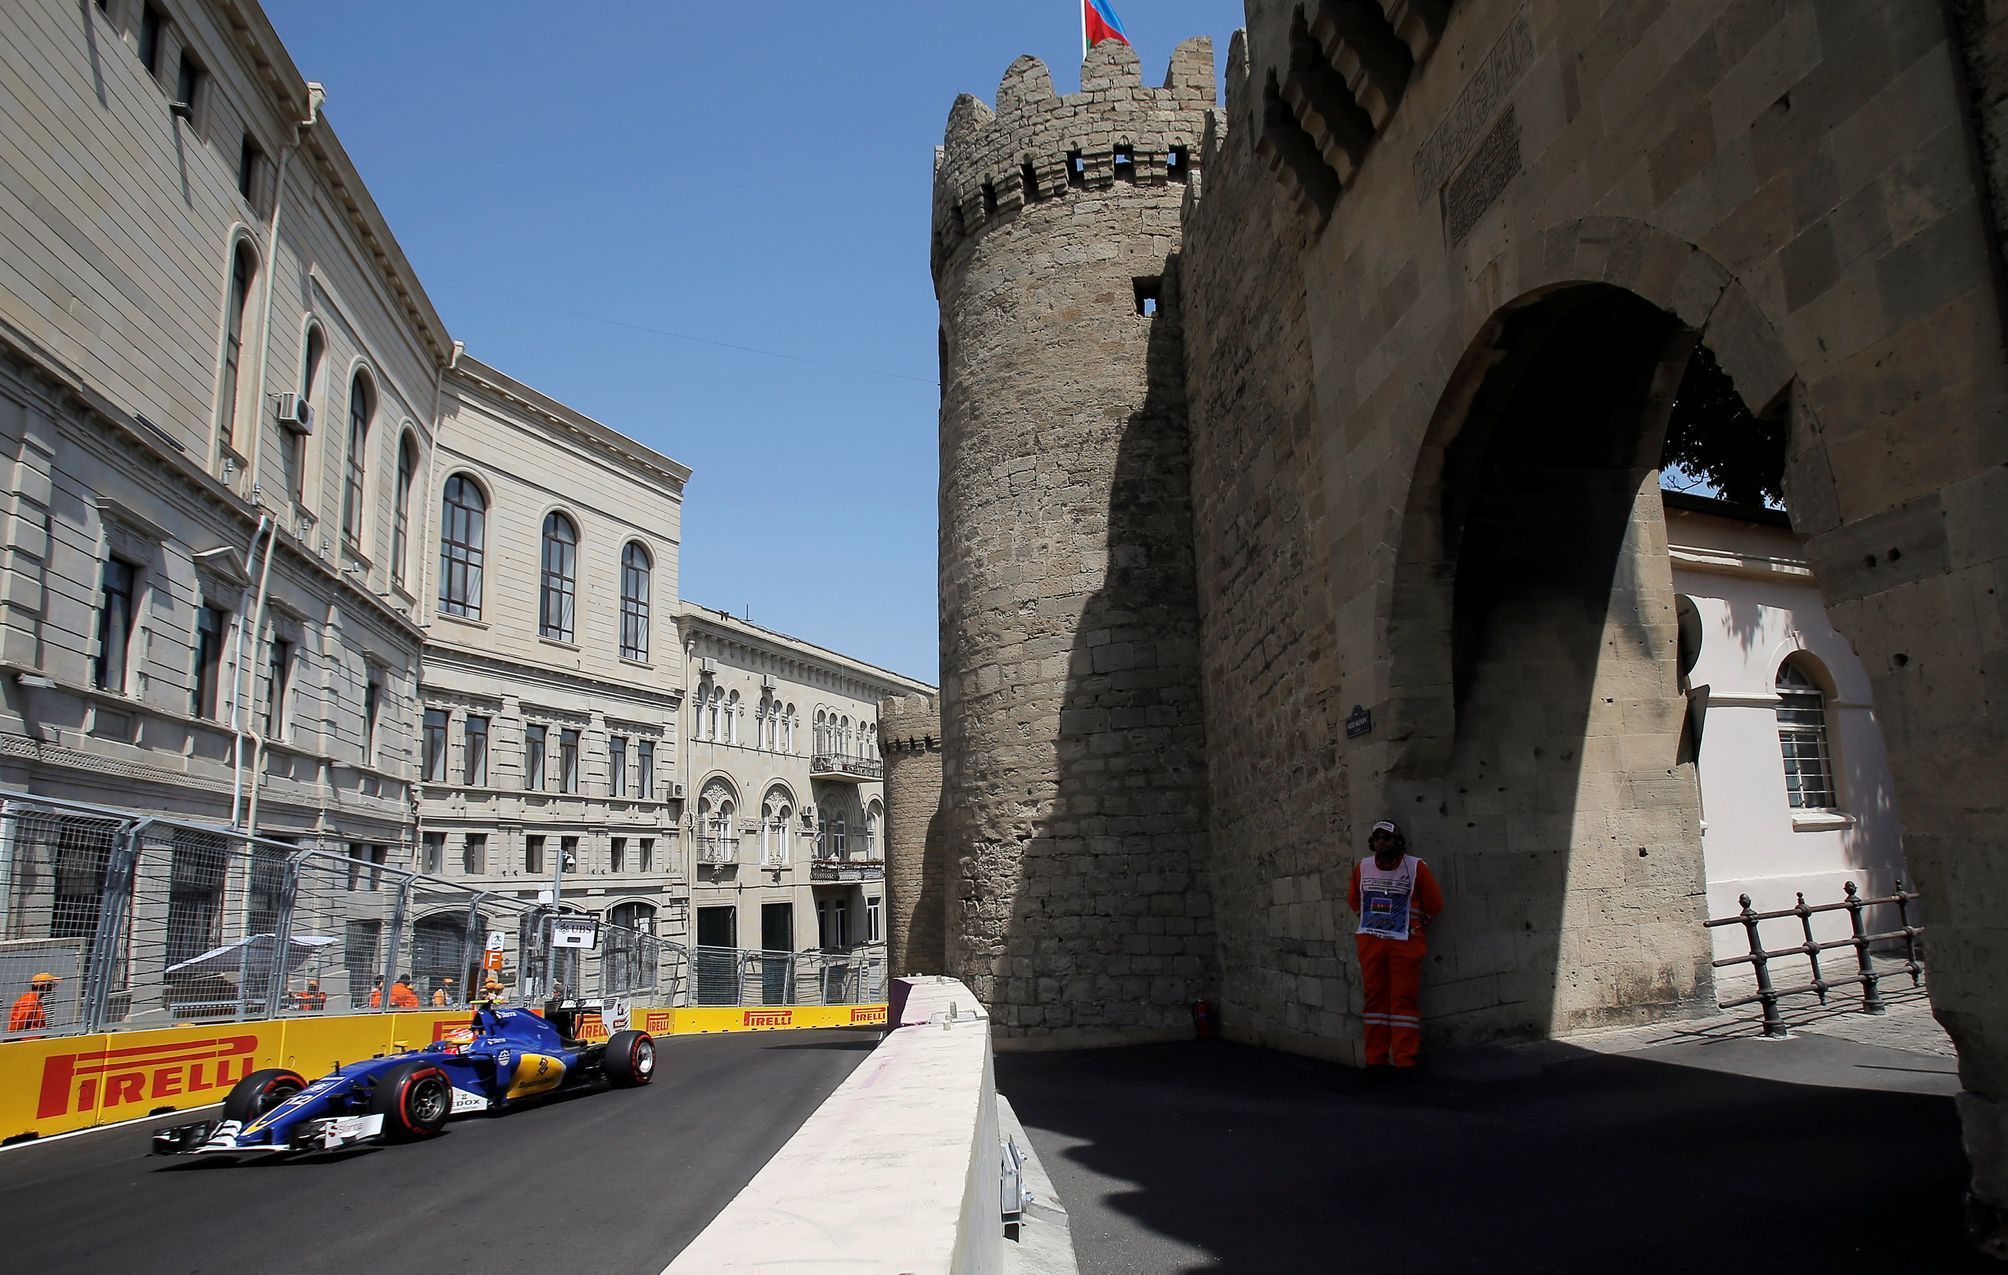 F1, VC Evropy v Baku 2016:  Felipe Nasr, Sauber